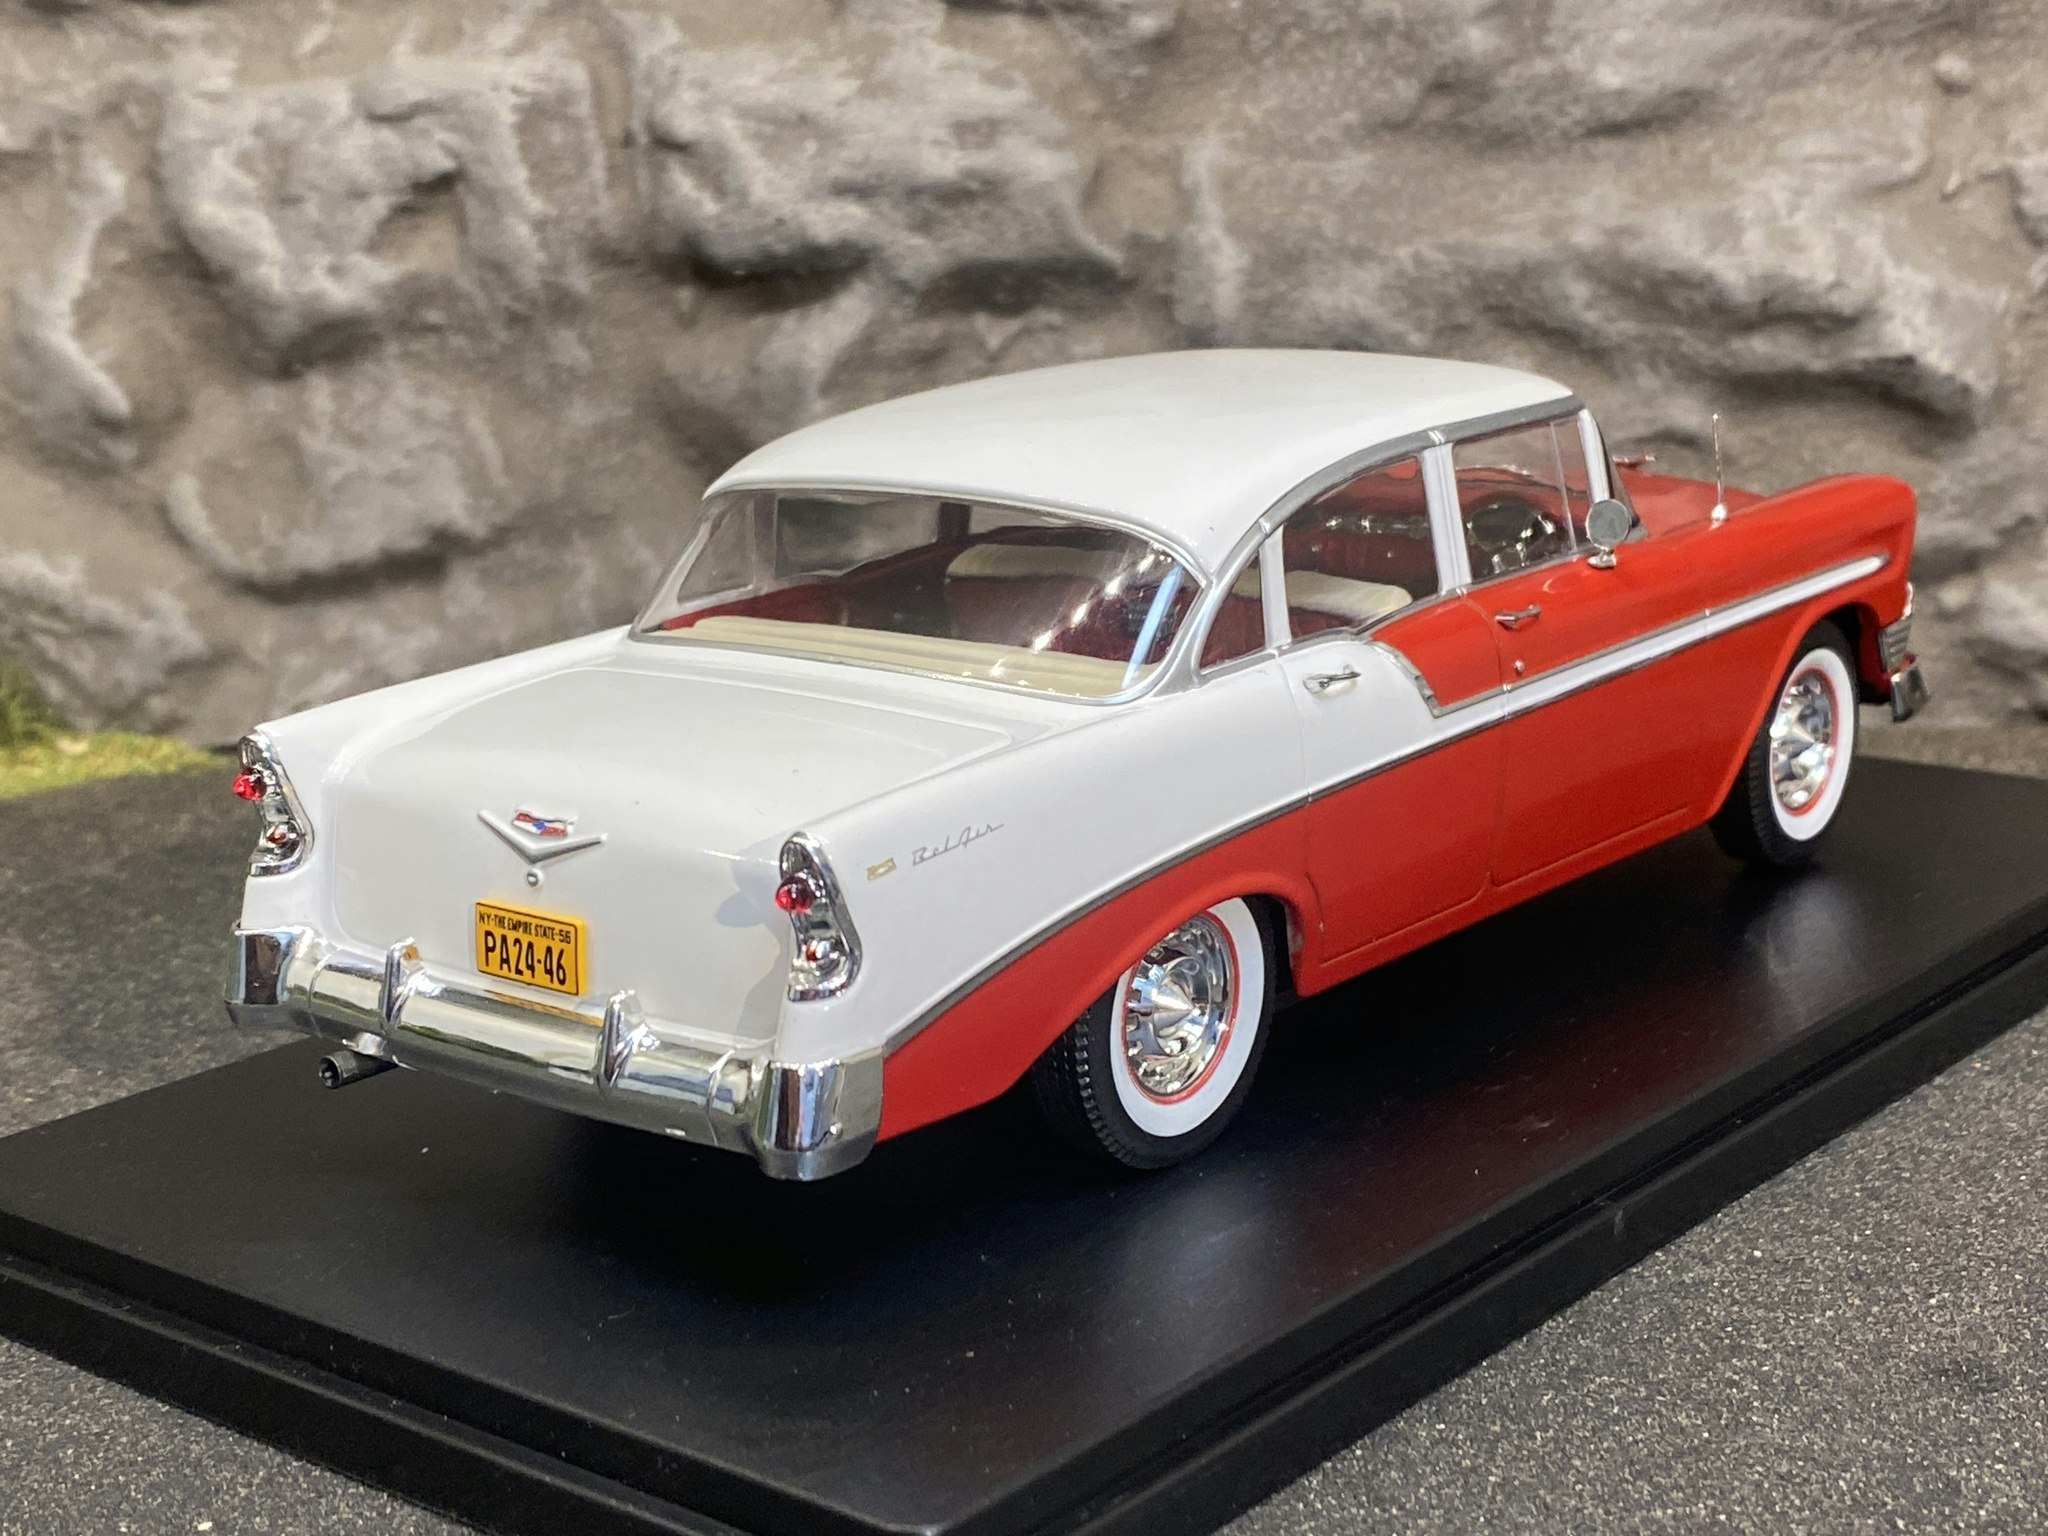 Skala 1/24 Chevrolet Bel Air 4-door Sedan, röd/vit, 1956 från WhiteBox